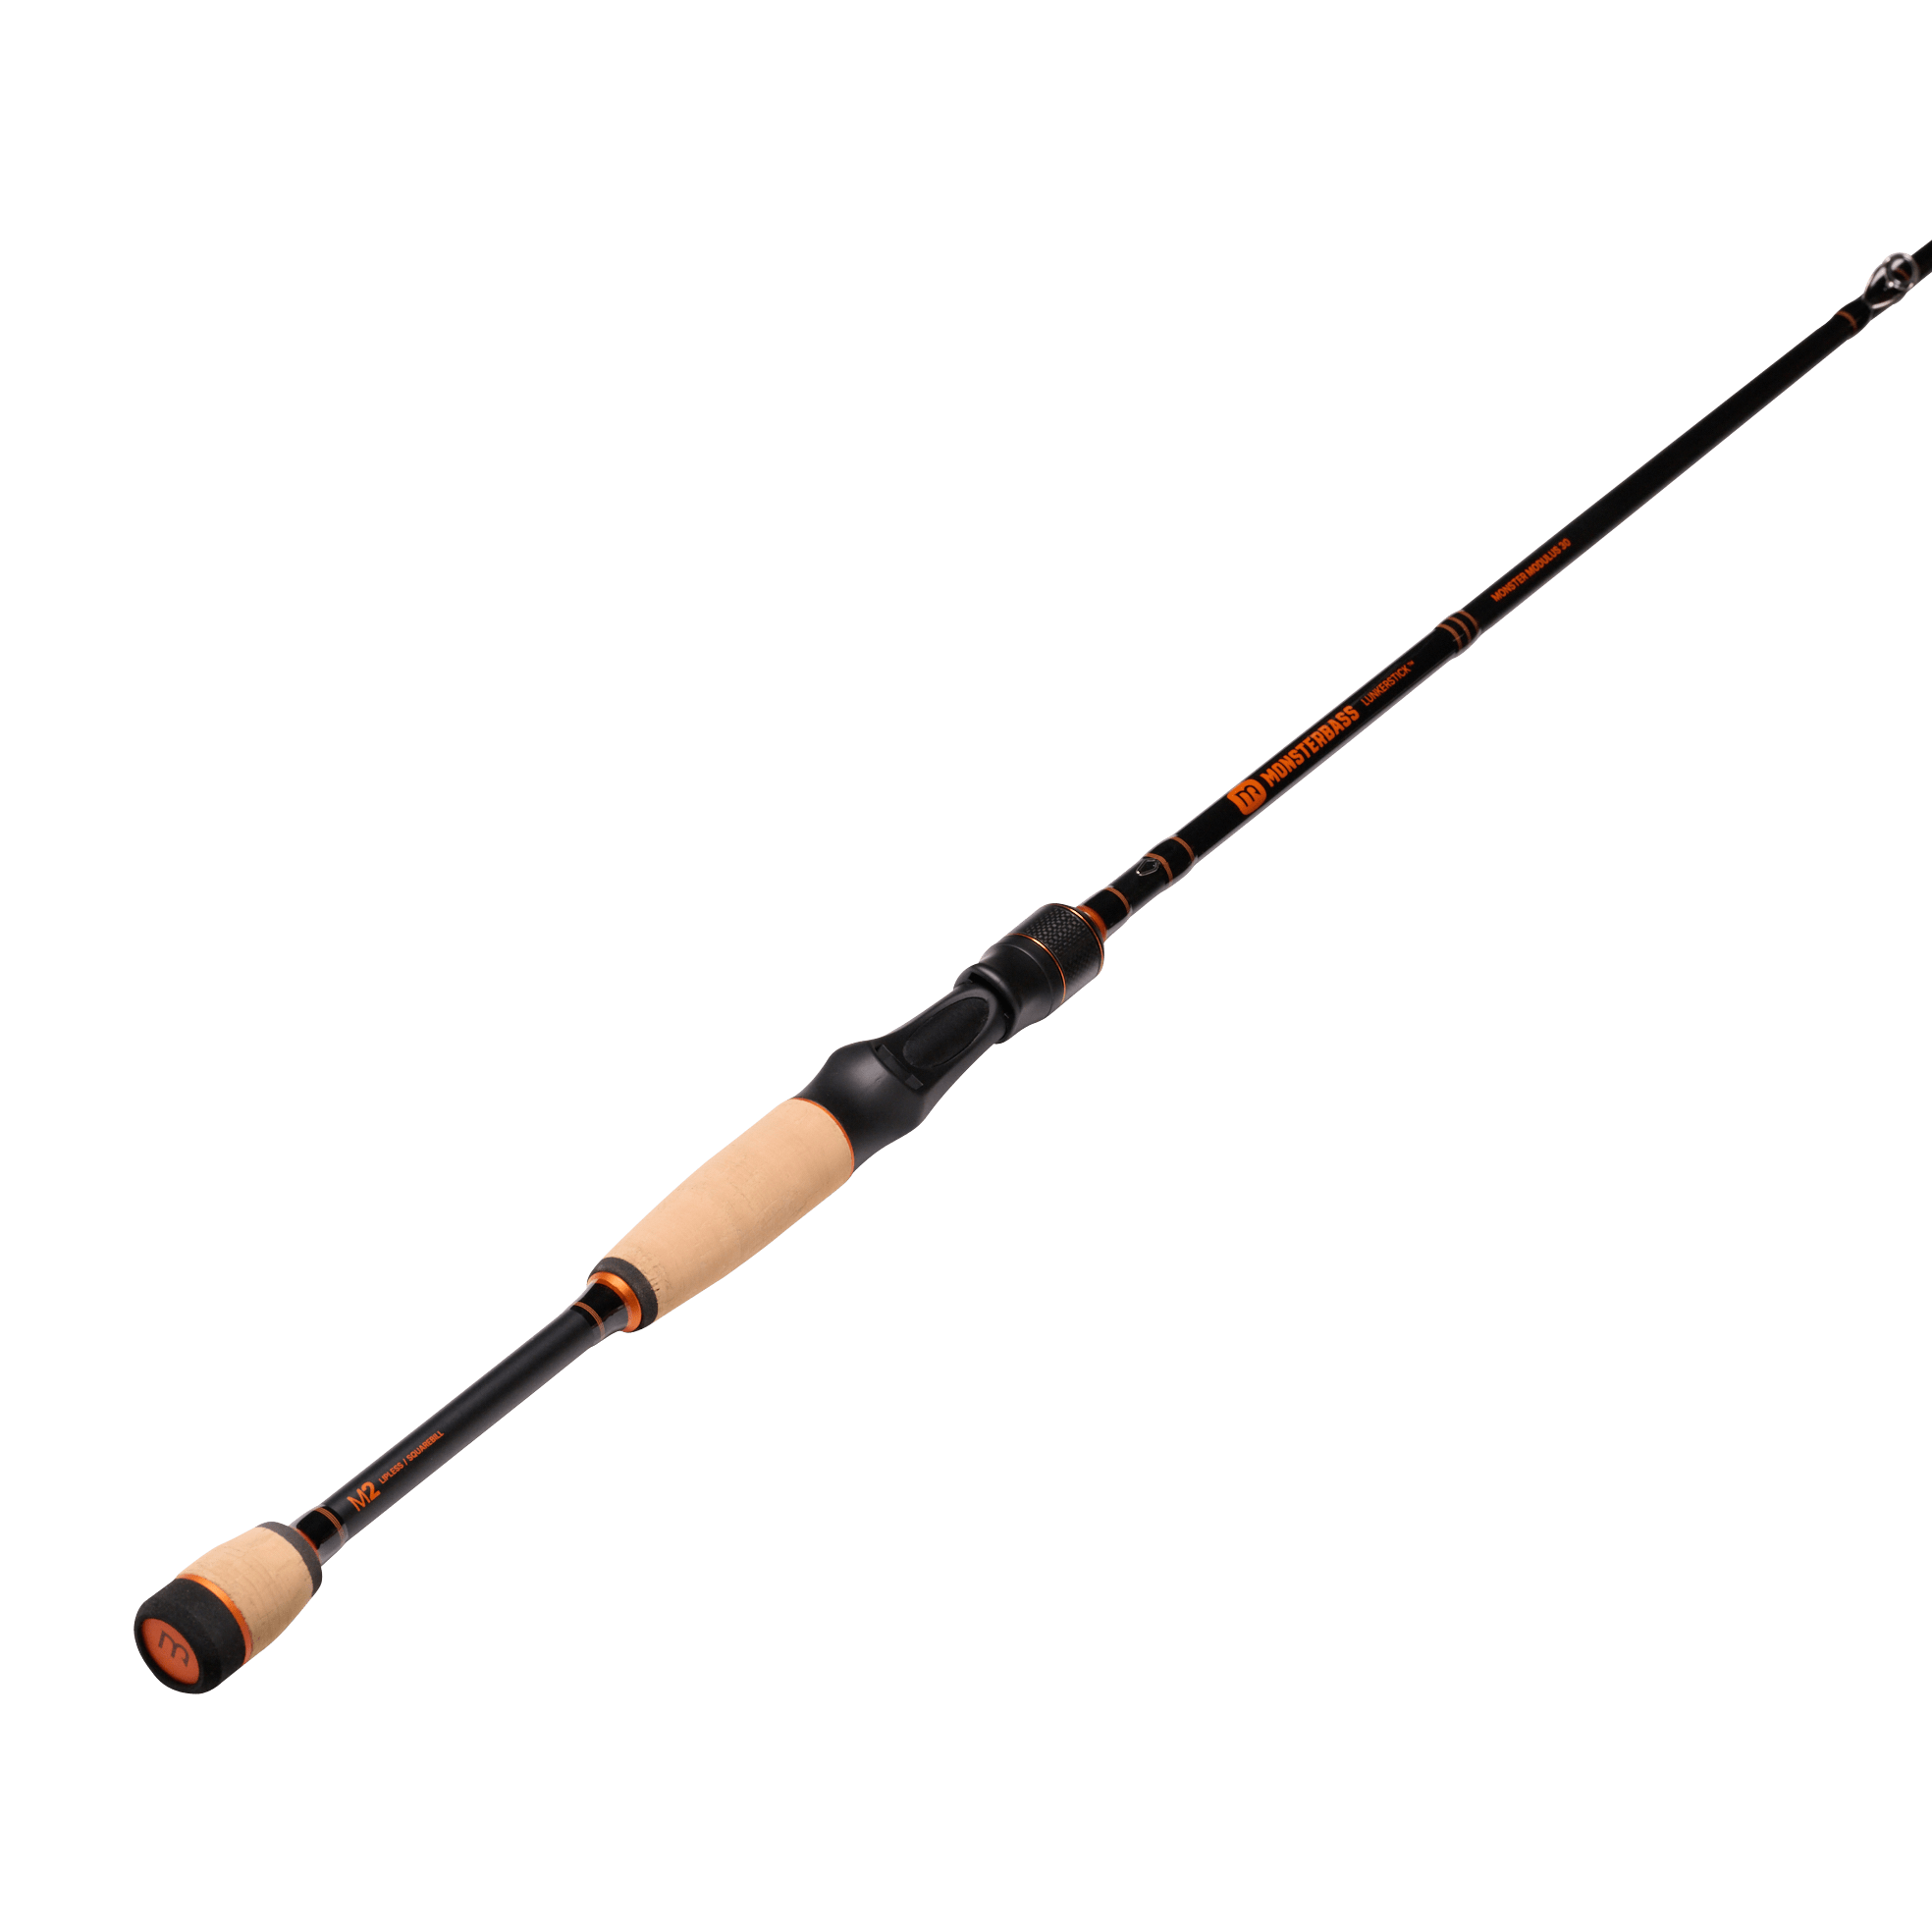  Fishing Rods - Shimano / Fishing Rods / Fishing Rods